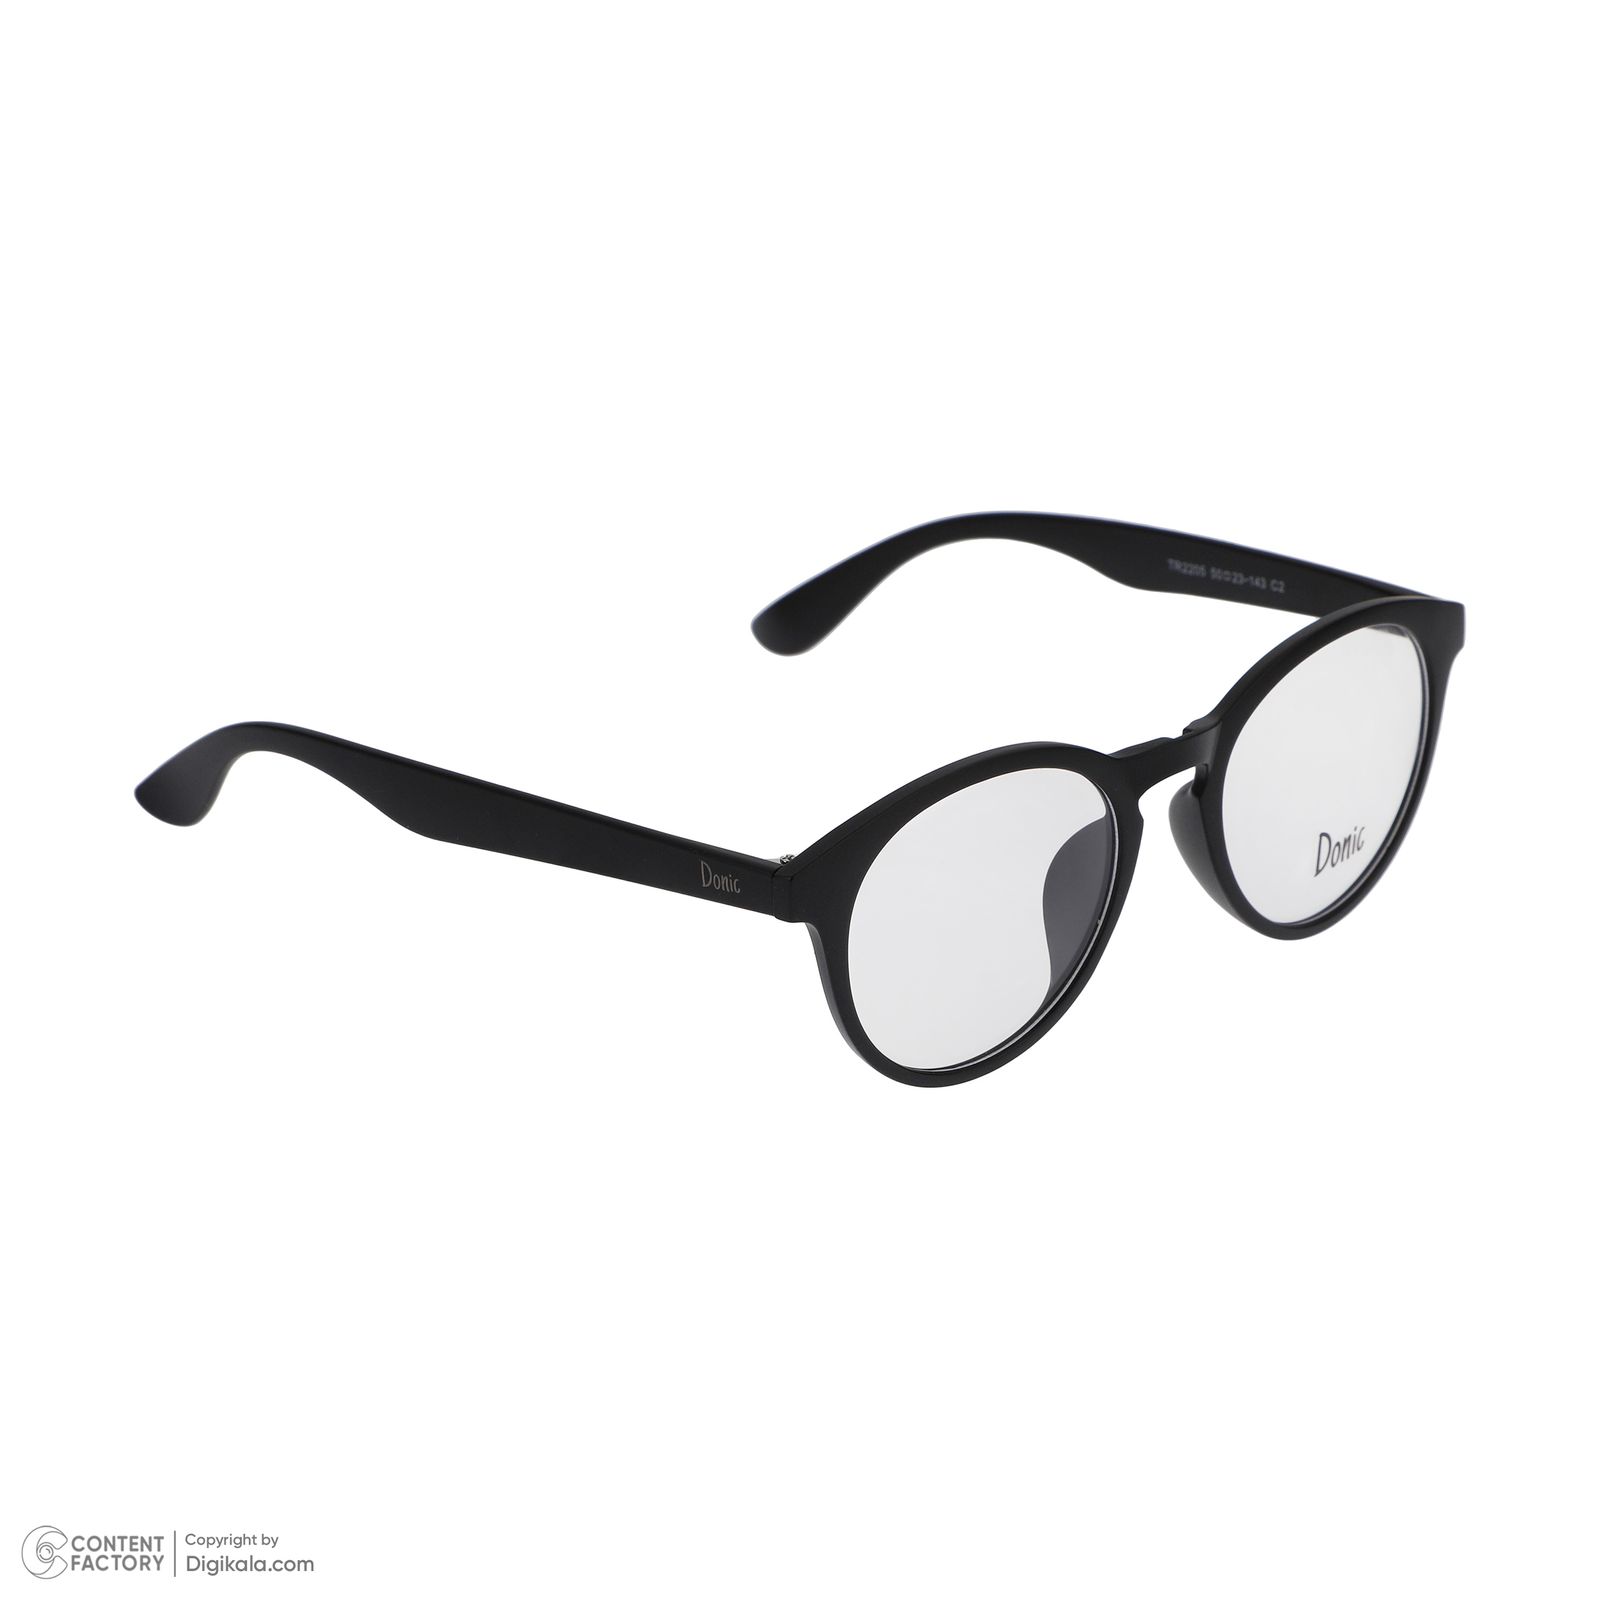 فریم عینک طبی دونیک مدل tr2205-c2 به همراه کاور آفتابی مجموعه 5 عددی -  - 3